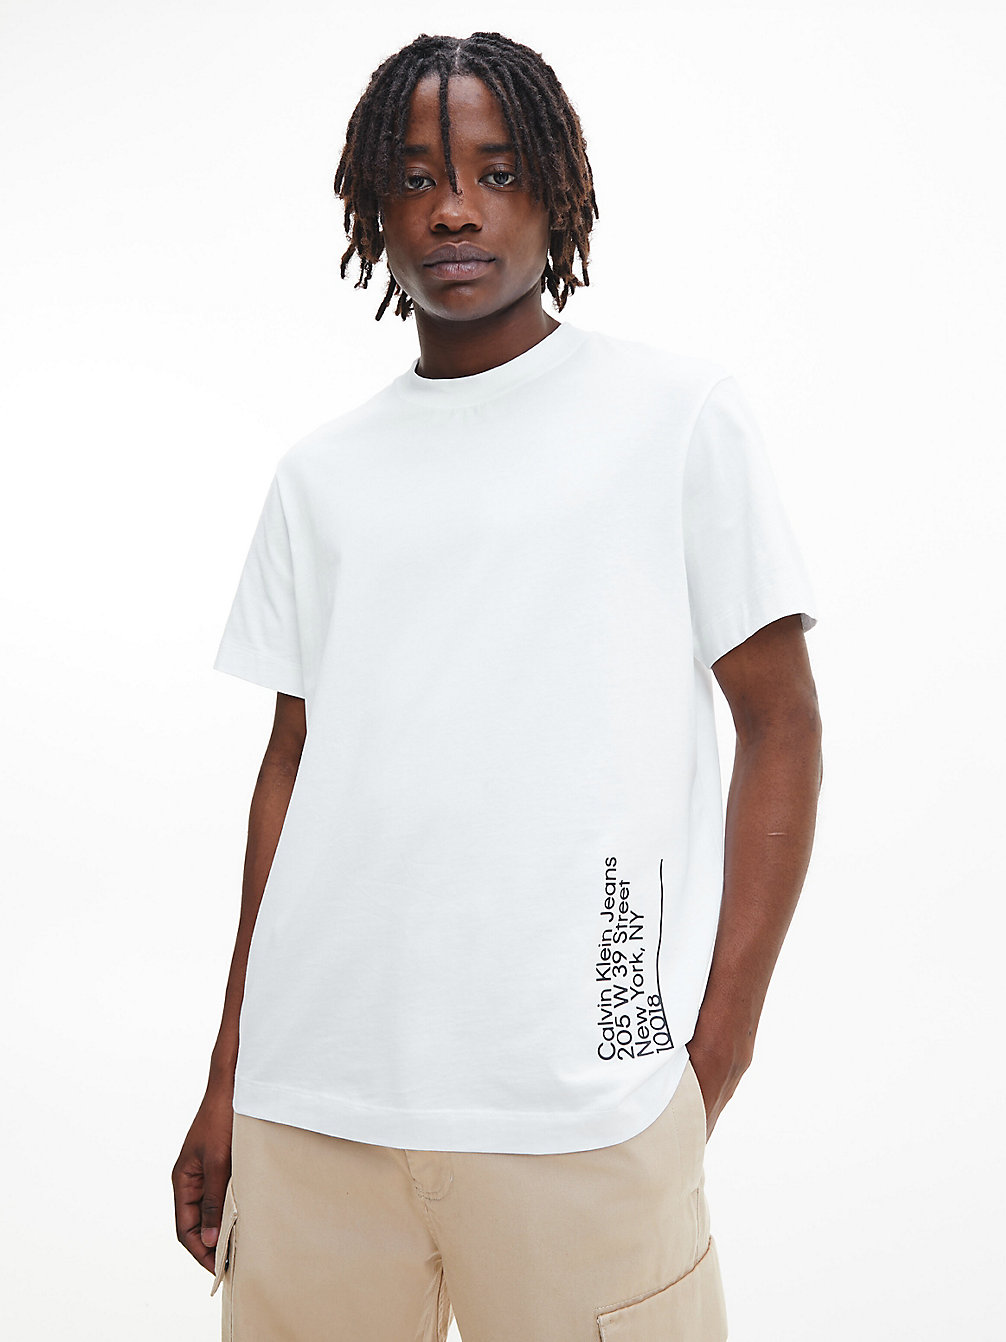 T-Shirt Con Stampa Fotografica Dal Taglio Relaxed > BRIGHT WHITE > undefined uomo > Calvin Klein